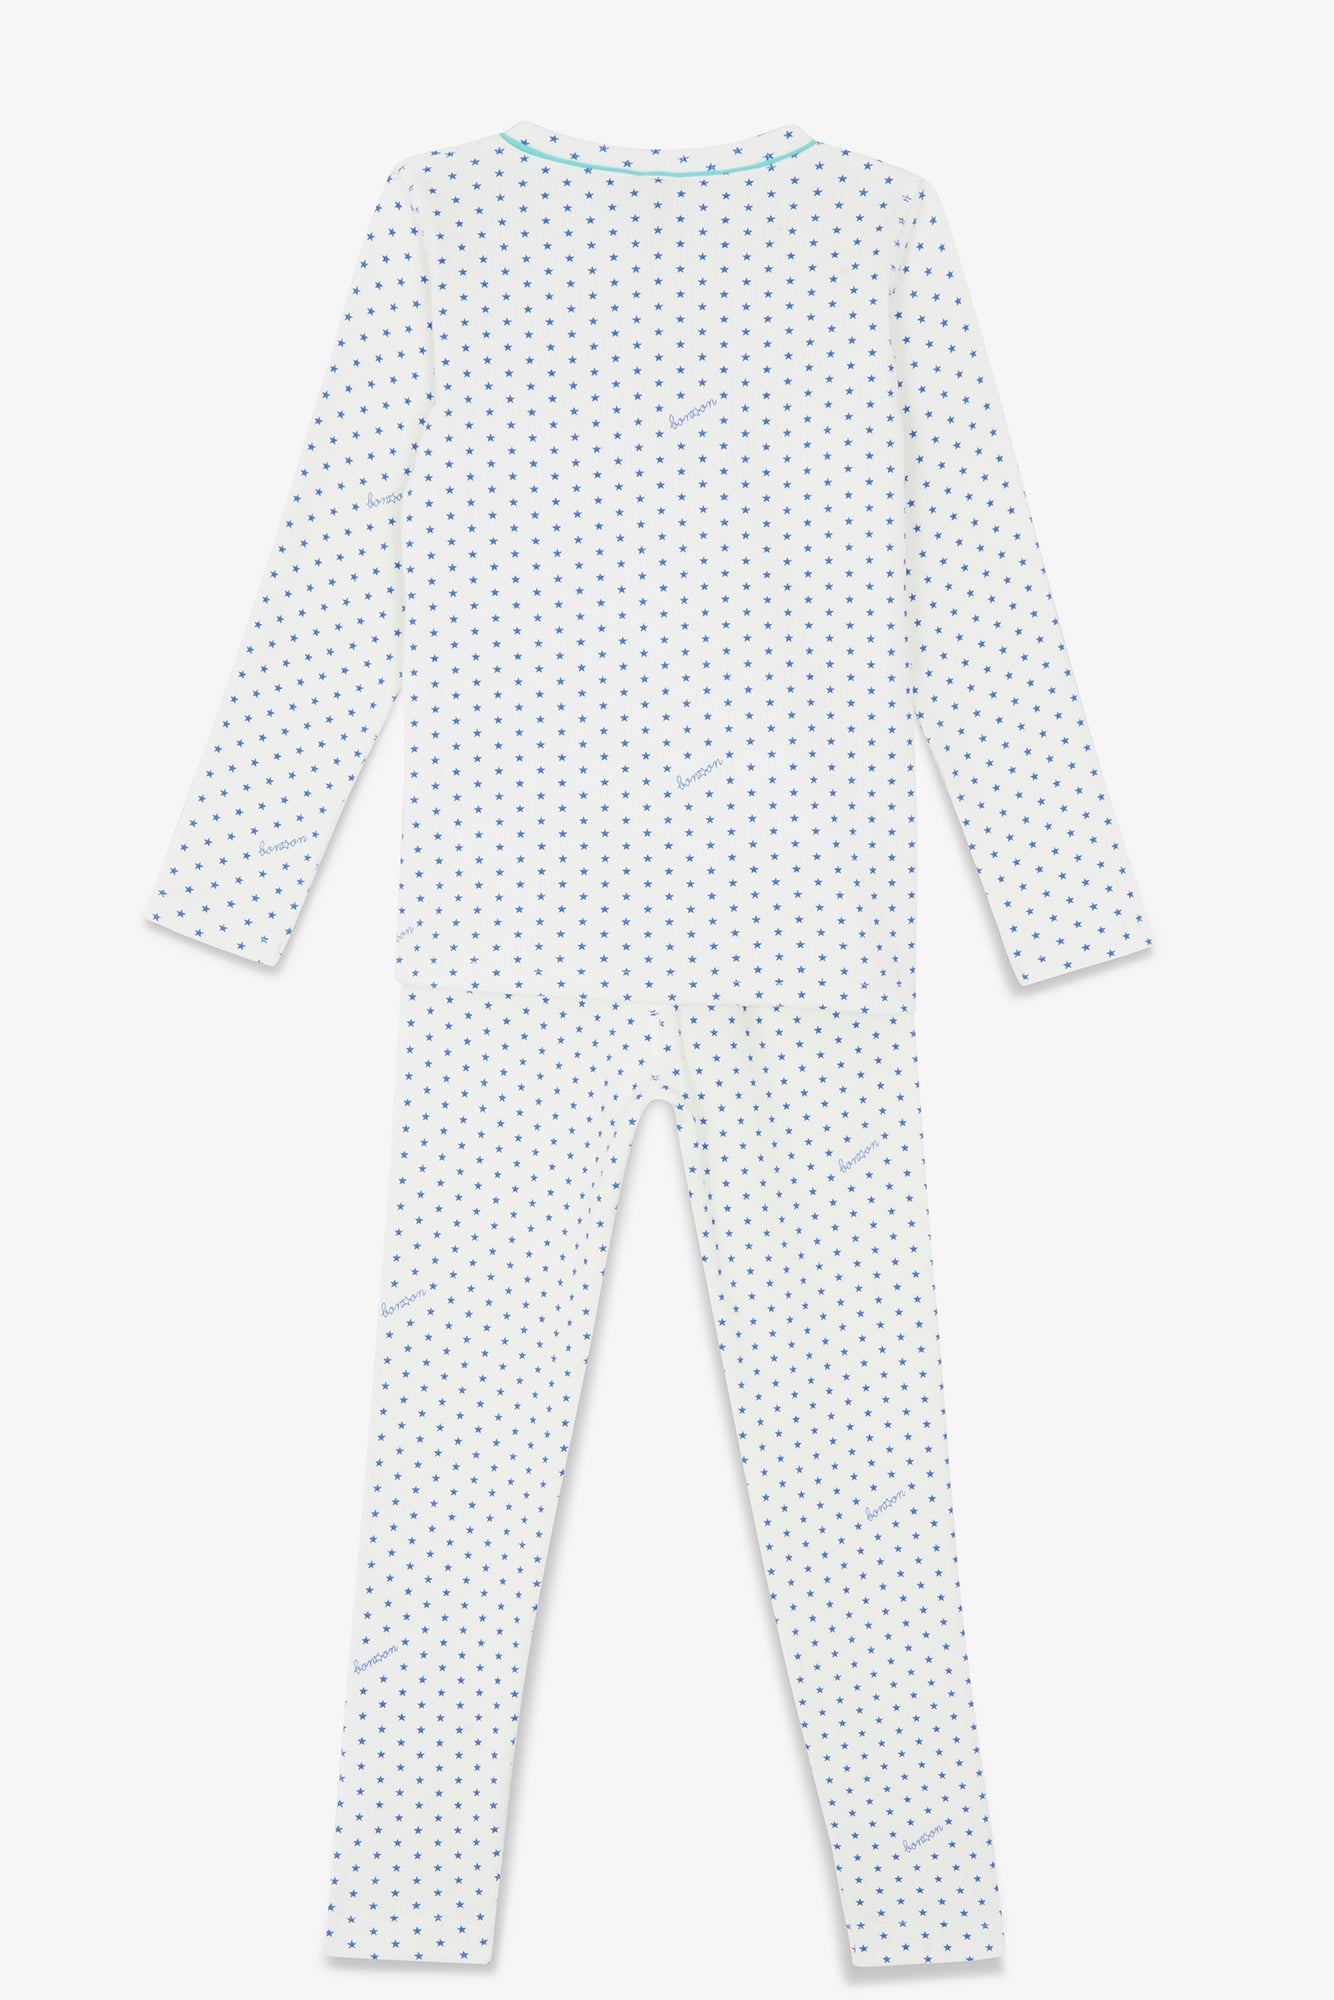 Outfit - Pajamas Blue Print stars